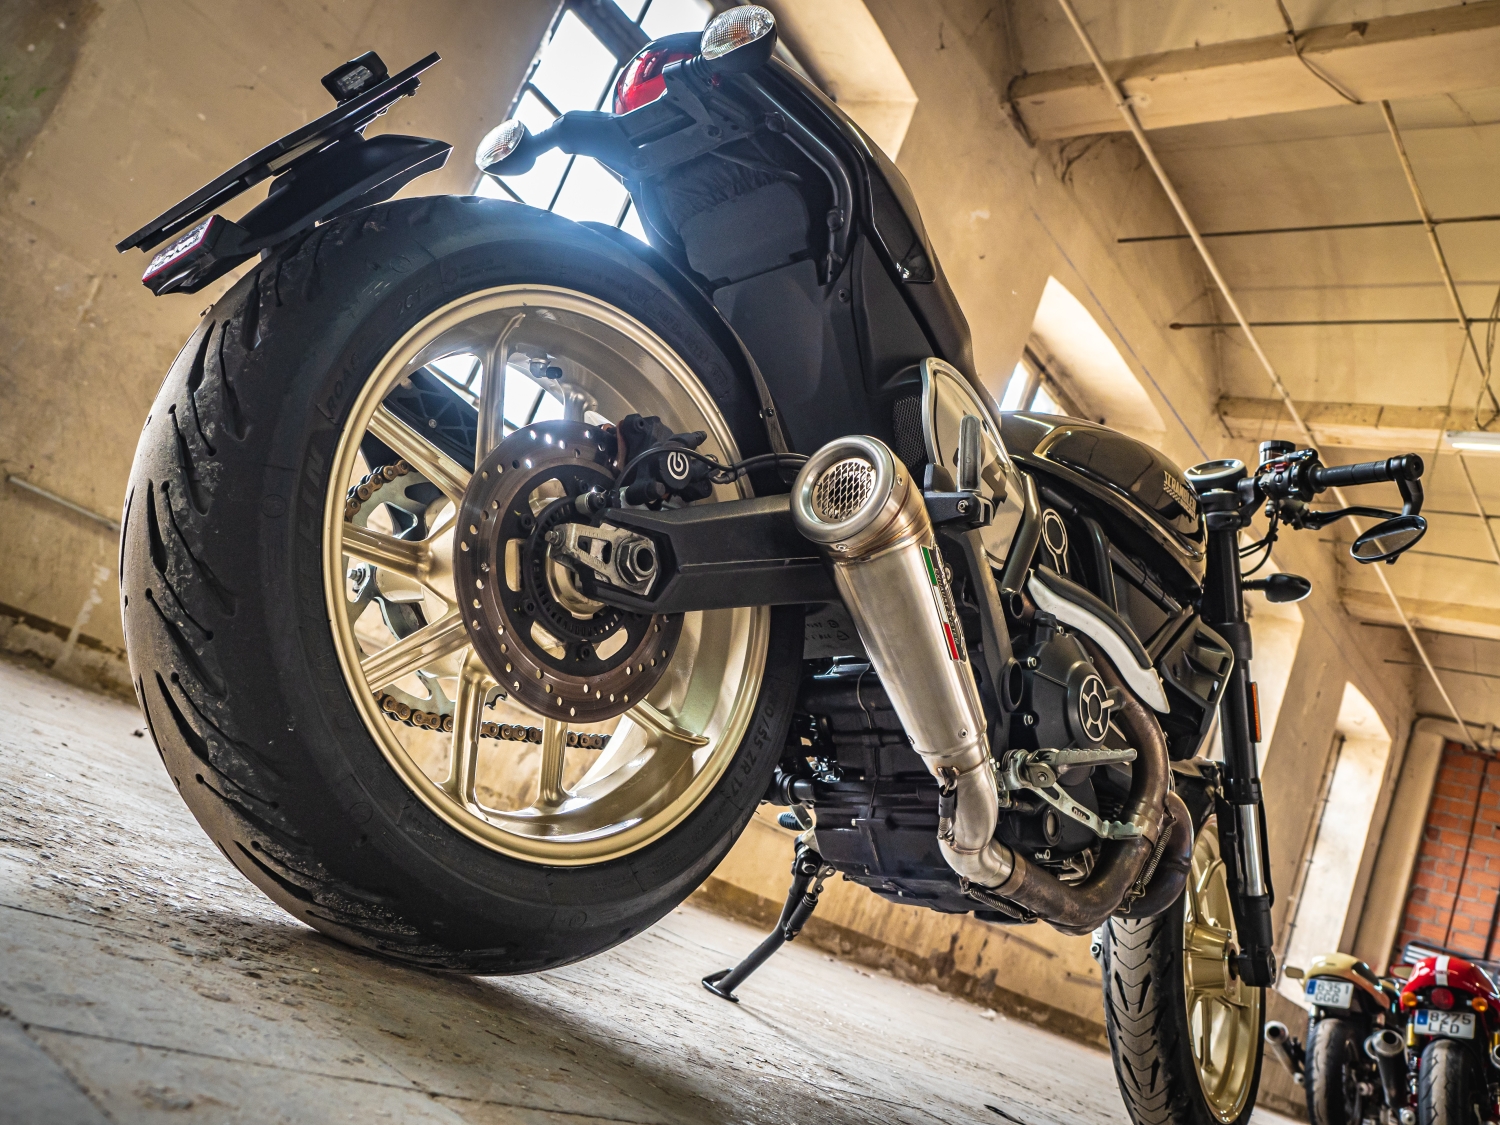 Scarico compatibile con Ducati Scrambler 800 2015-2016, Powercone Evo, Scarico omologato, silenziatore con db killer estraibile e raccordo specifico